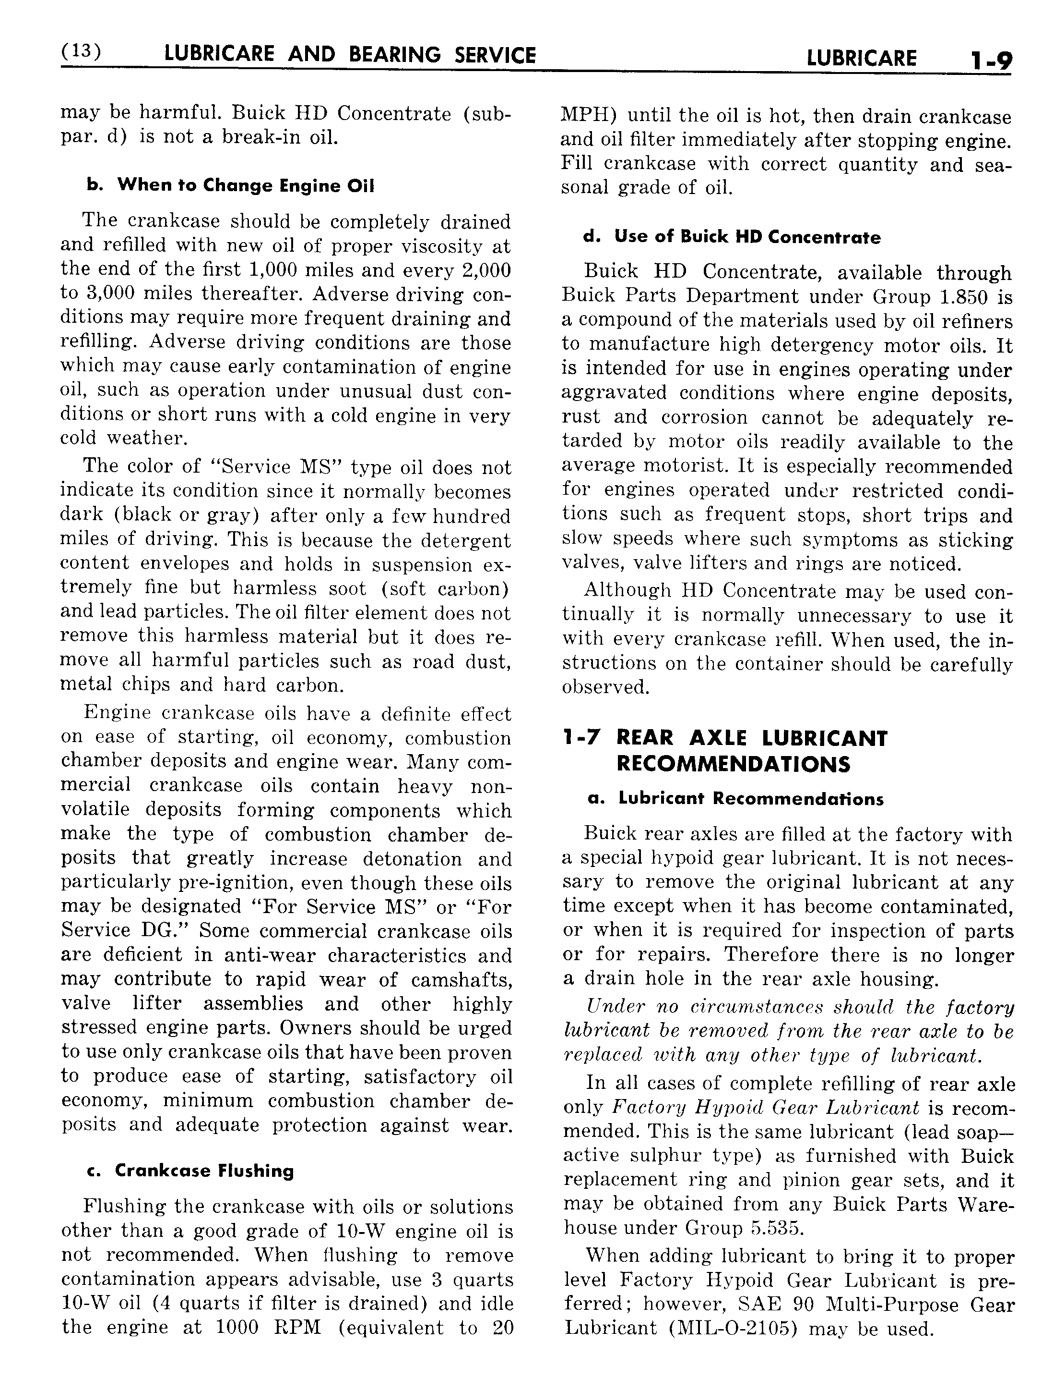 n_02 1956 Buick Shop Manual - Lubricare-009-009.jpg